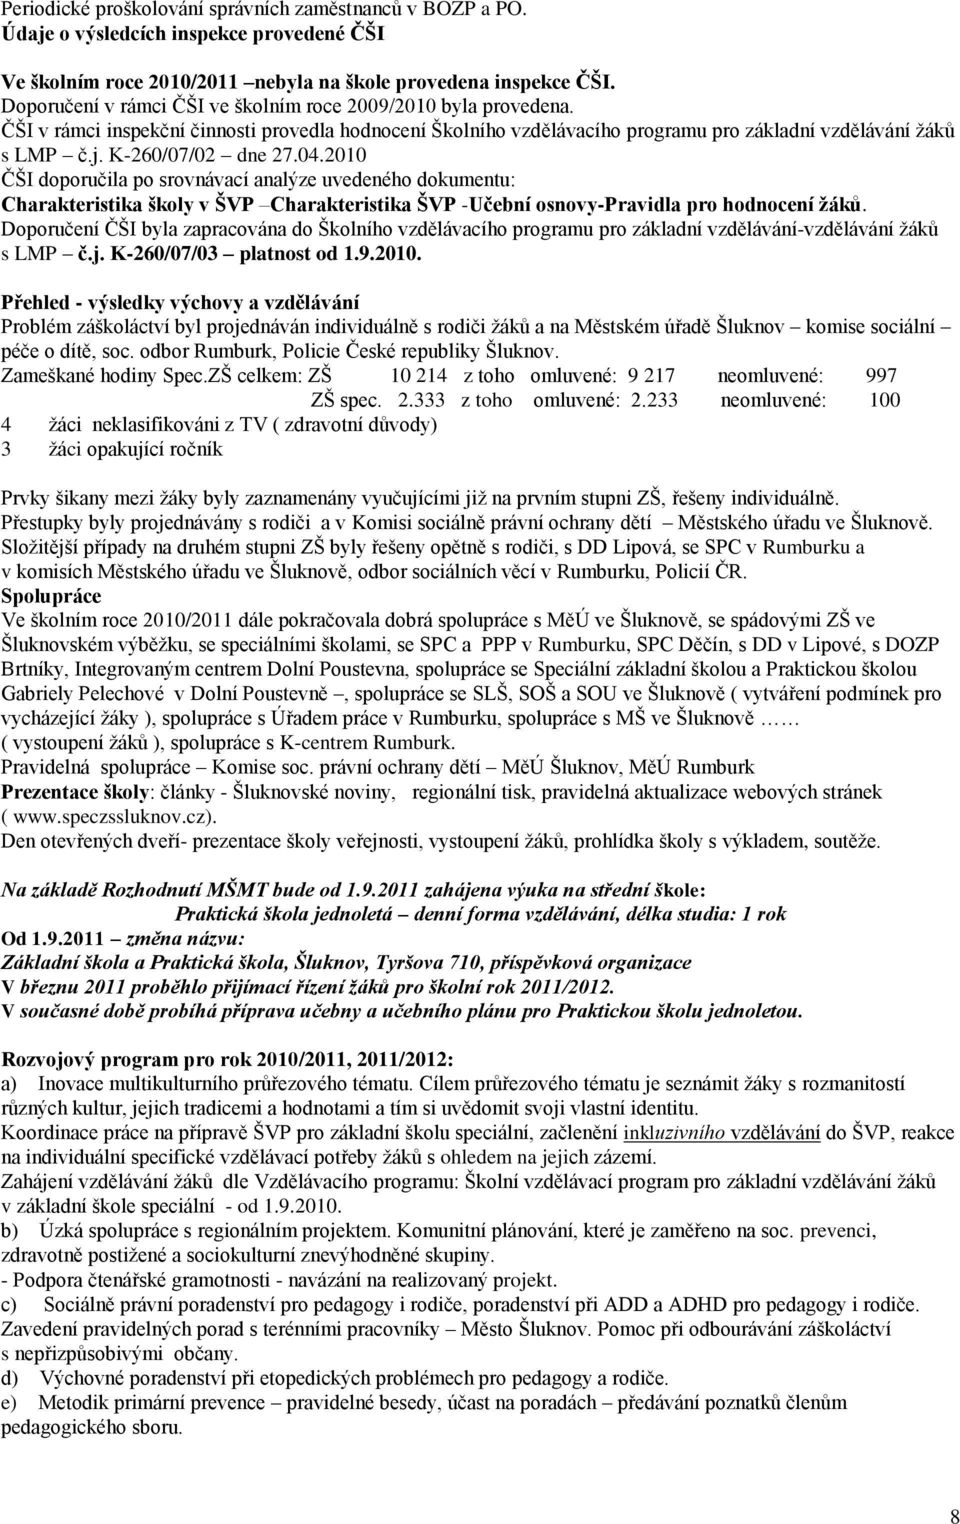 K-260/07/02 dne 27.04.2010 ČŠI doporučila po srovnávací analýze uvedeného dokumentu: Charakteristika školy v ŠVP Charakteristika ŠVP -Učební osnovy-pravidla pro hodnocení žáků.